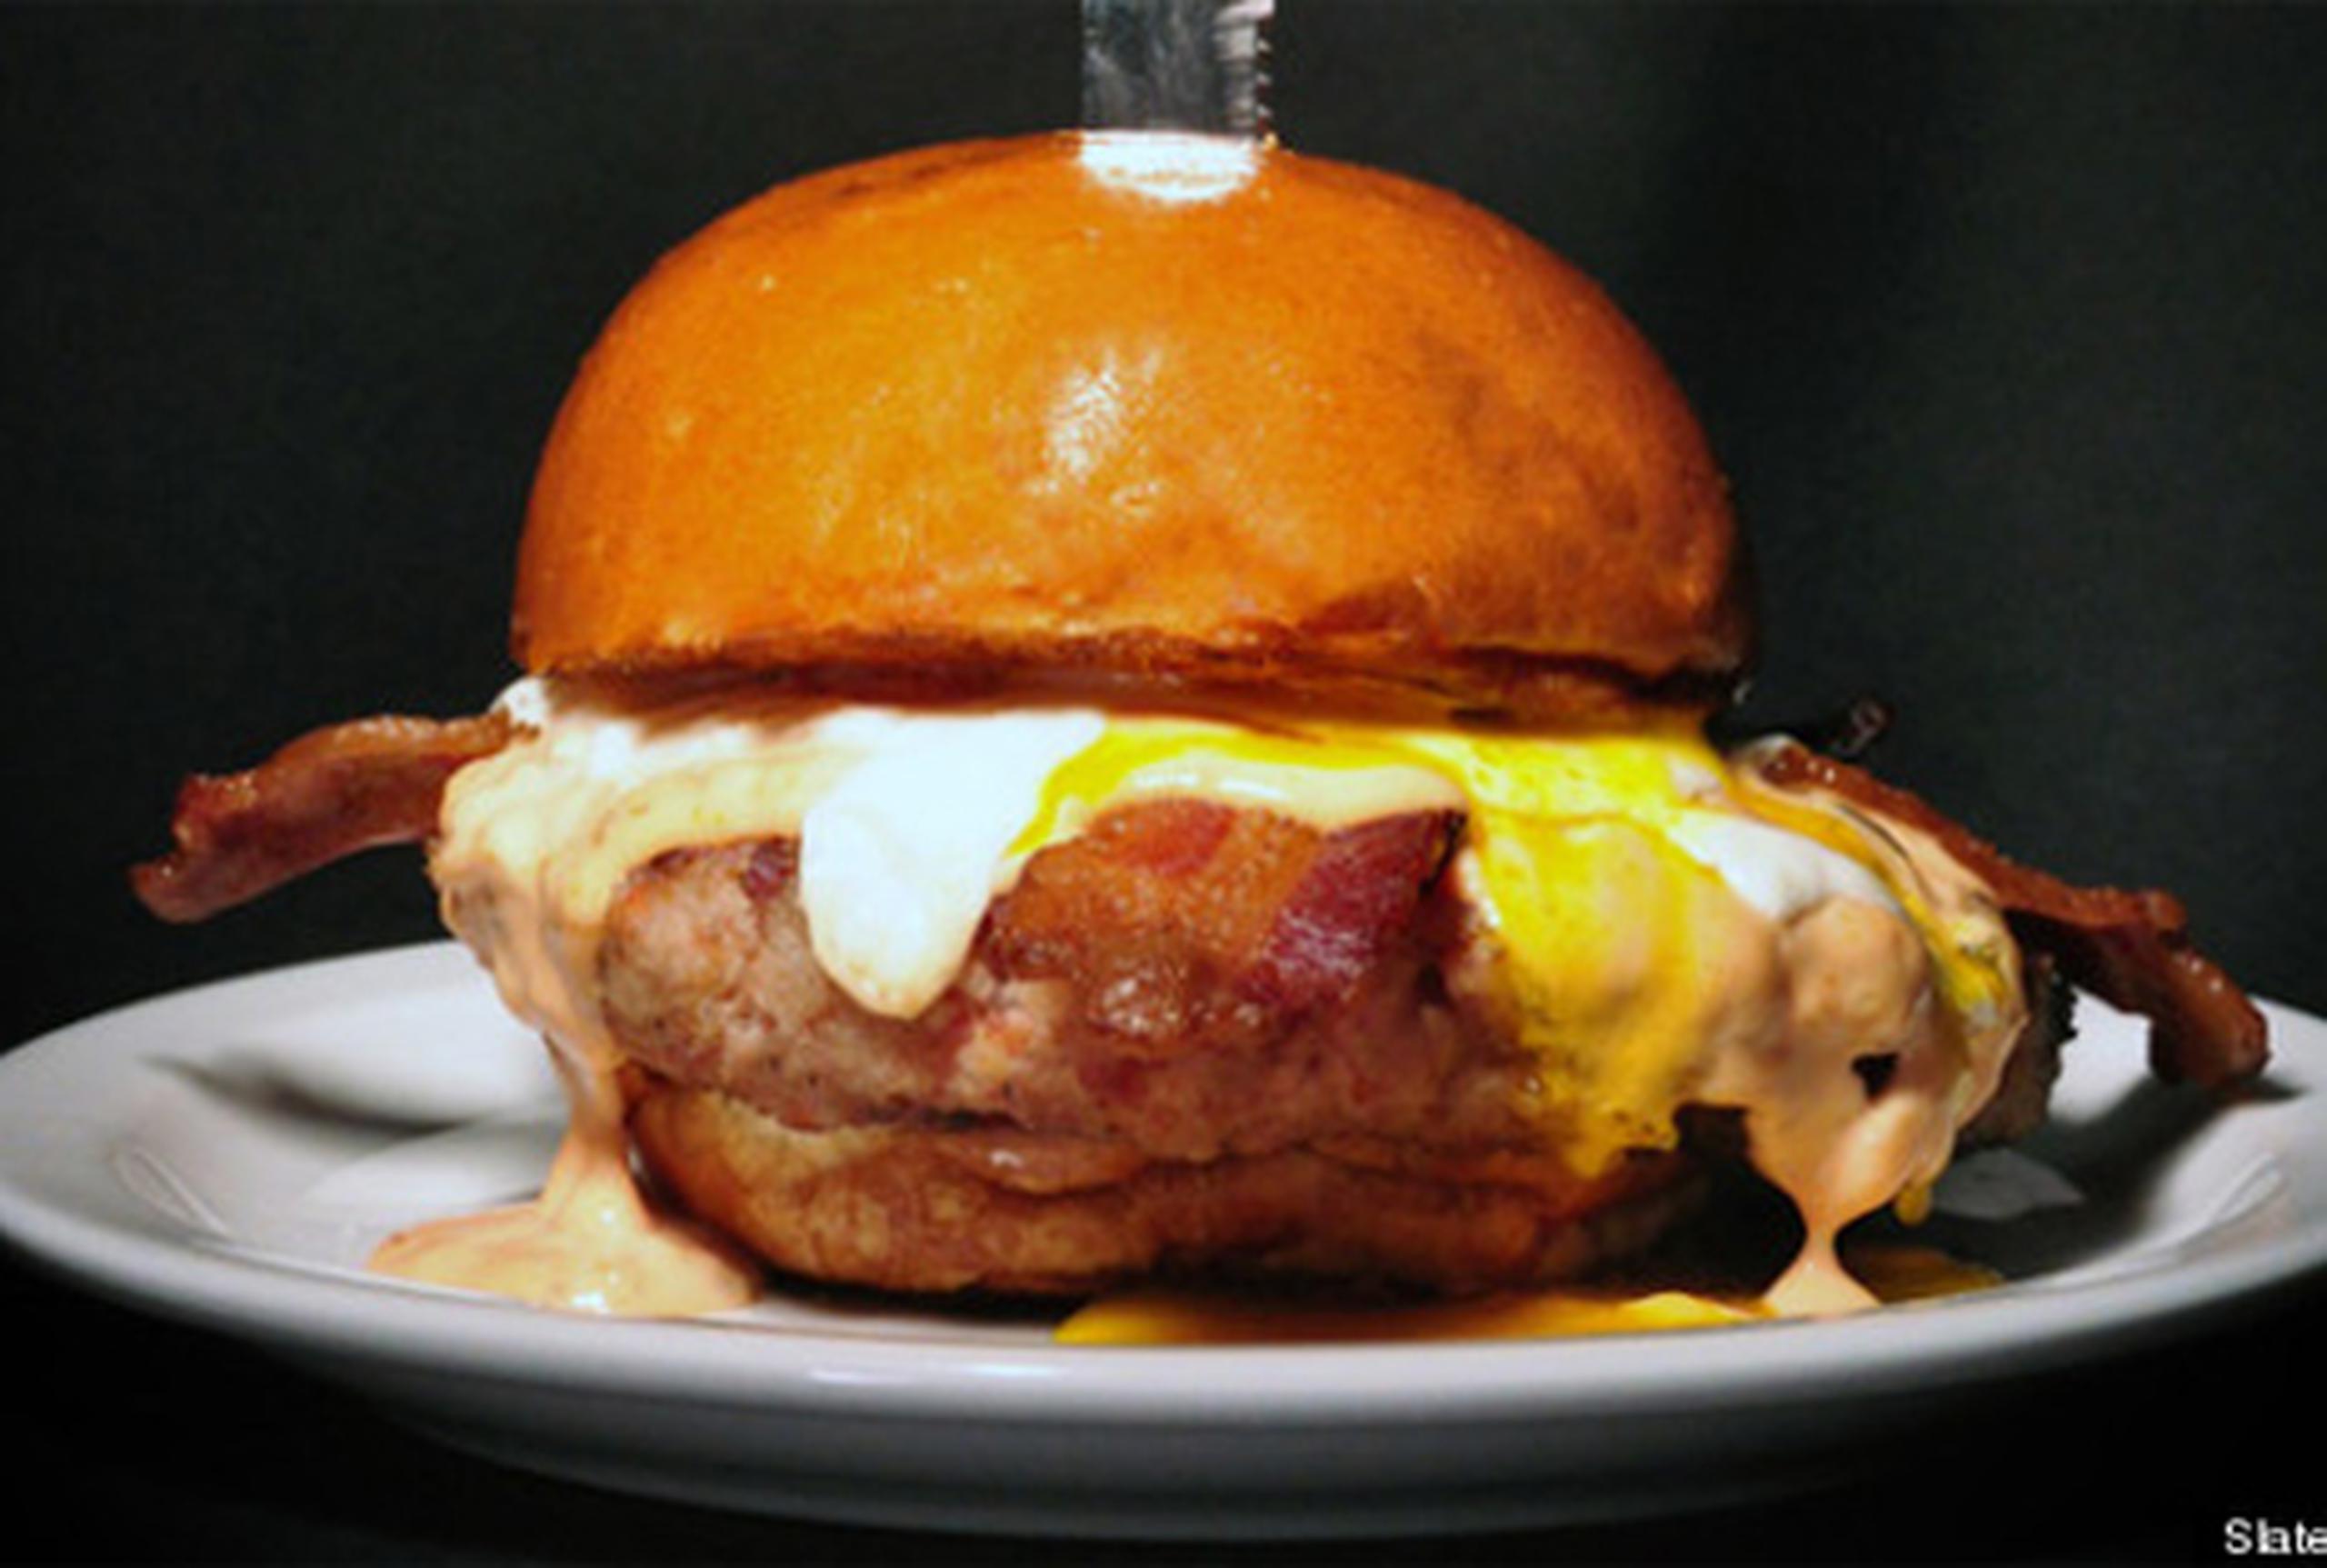 El "Merica Burger" está hecho de 100 por ciento tocineta molida, cubierta por una gruesa lasca de tocineta, huevo frito, un aderezo llamado “bacon island” y una lasca de queso "bacon cheddar". (Slaters 50/50)